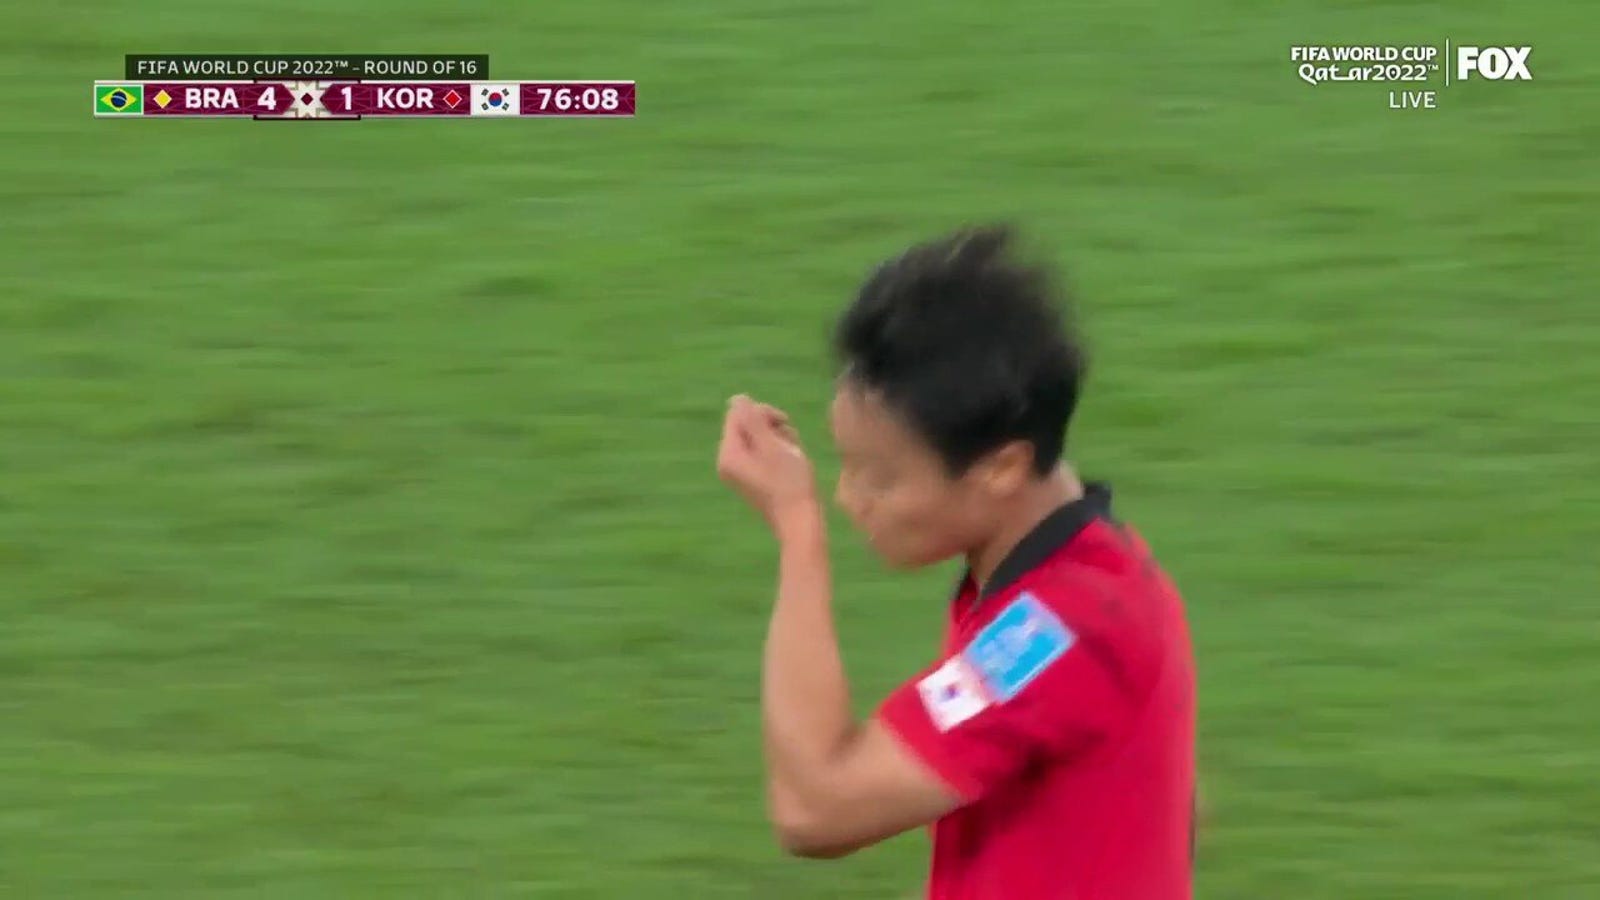 Baek Seung-ho z Korei Południowej strzela gola przeciwko Brazylii w 76 minut